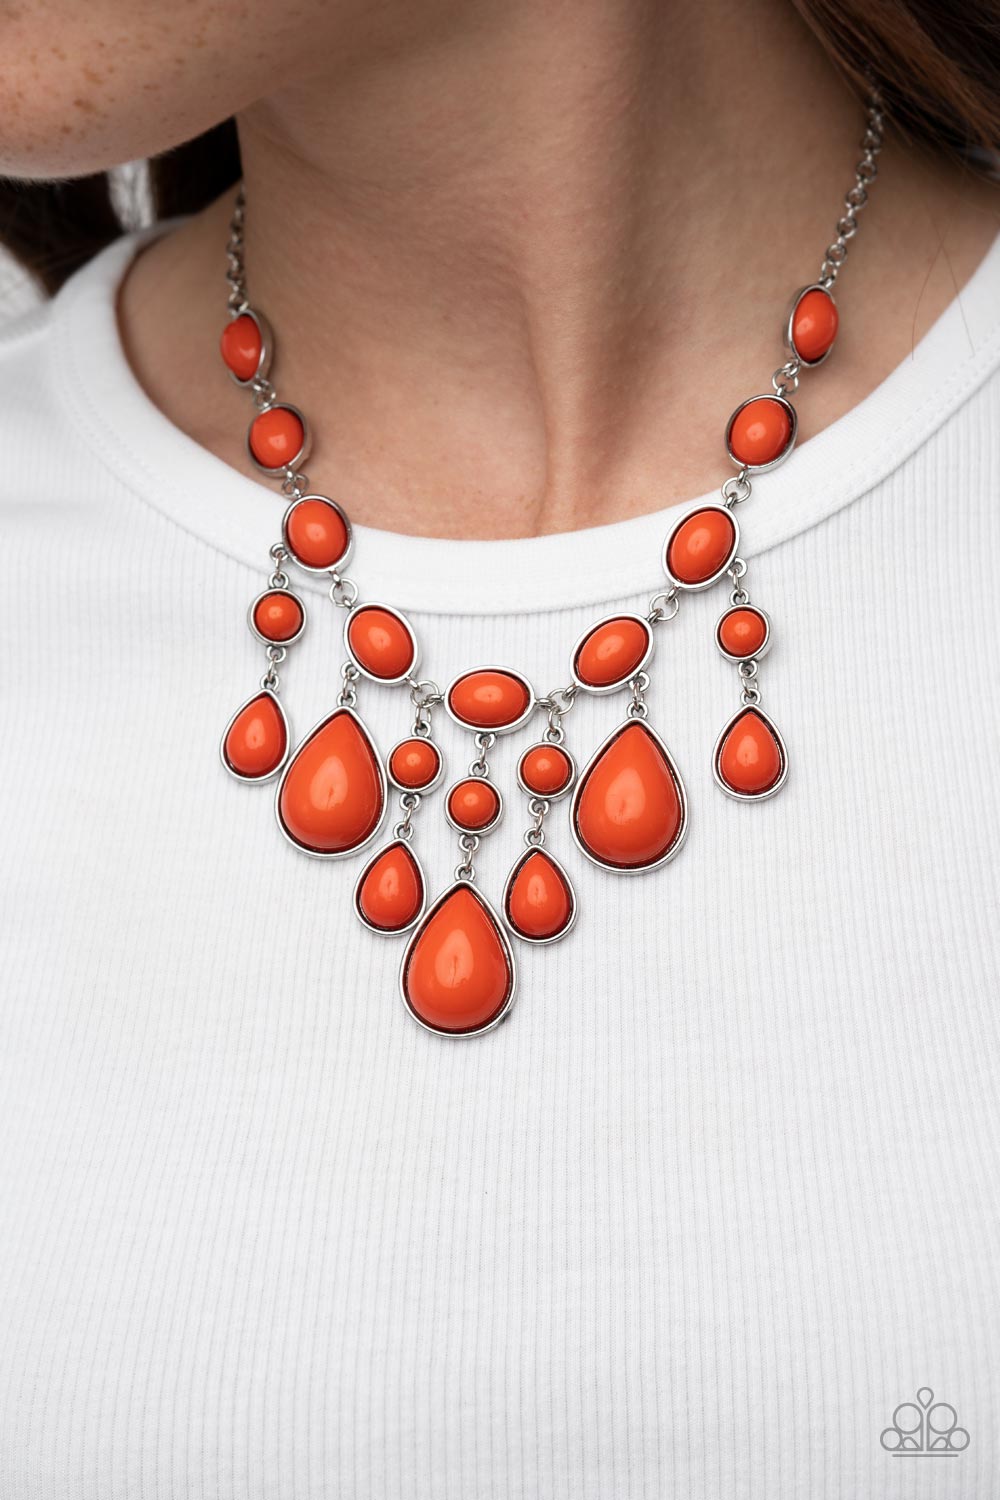 Mediterranean Mystery Orange-Necklace